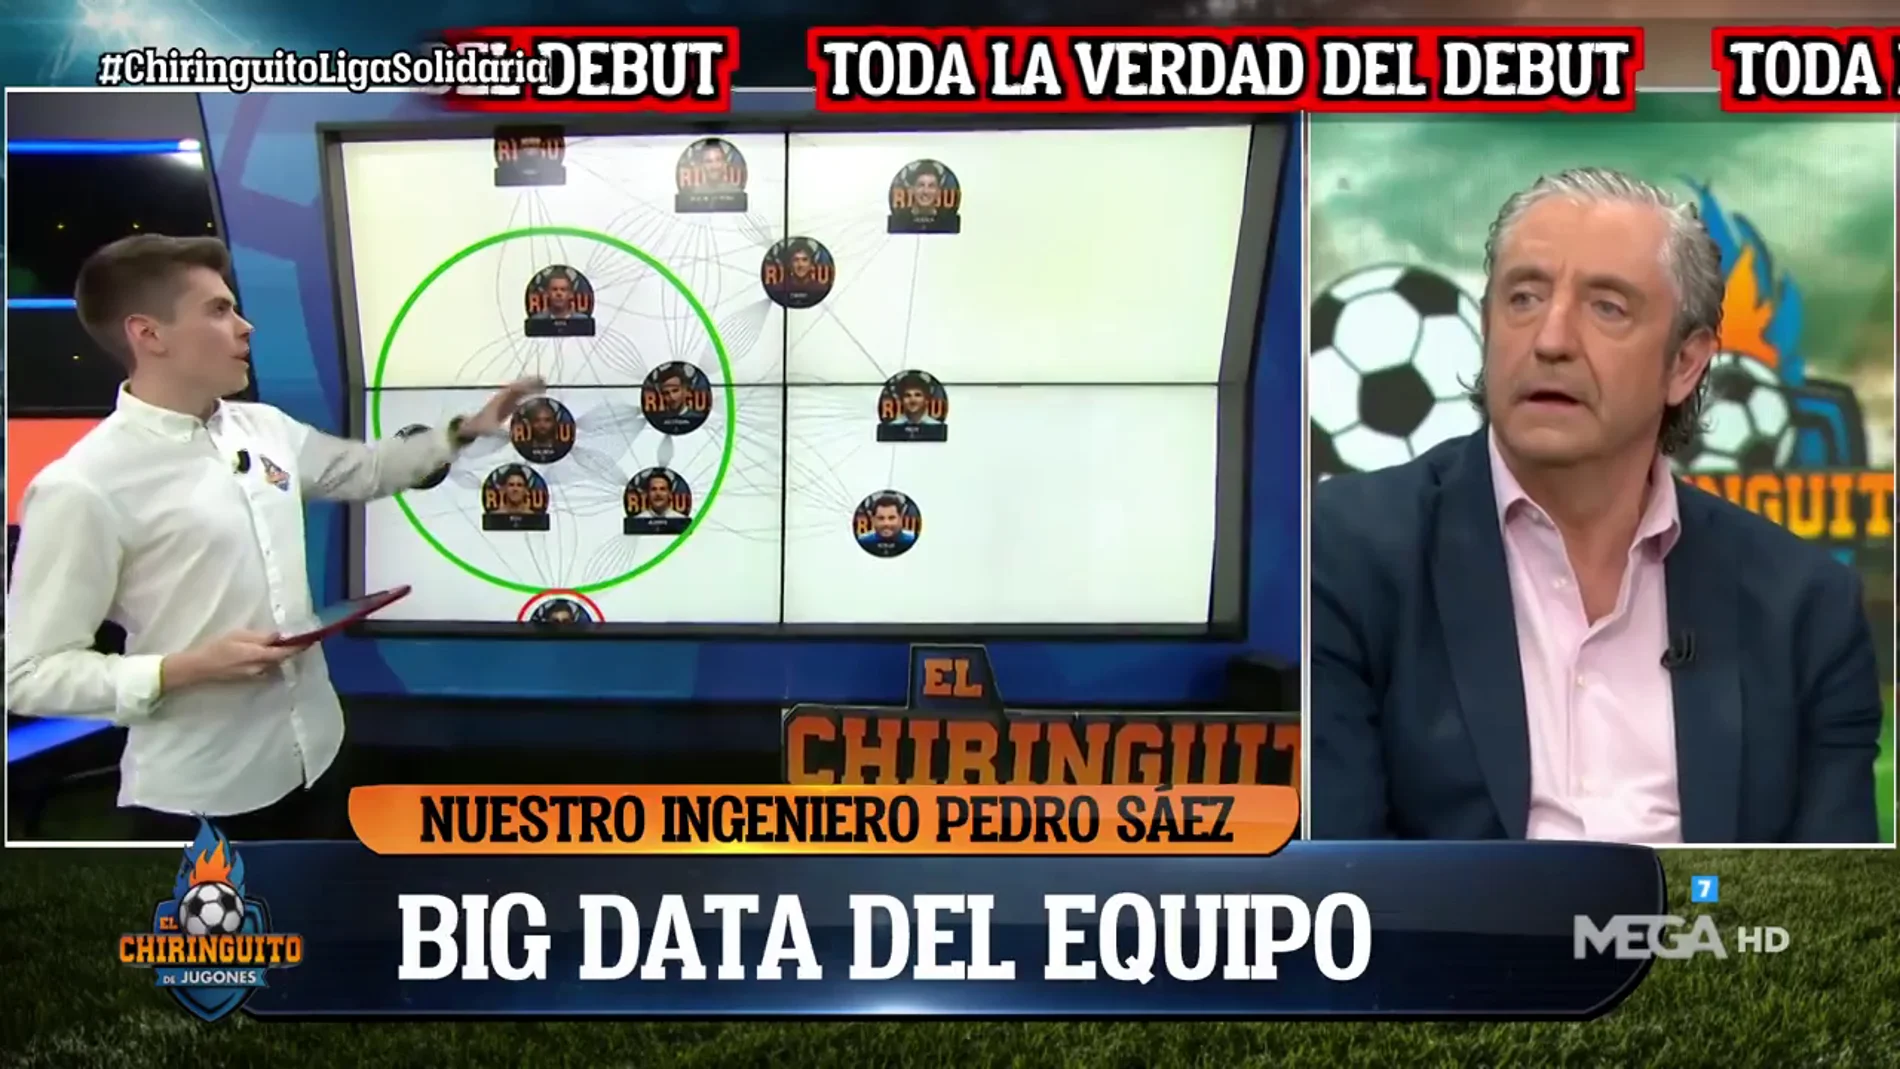 ¡Ojo a los retratados en el debut de El Chiringuito en La Liga Solidaria!